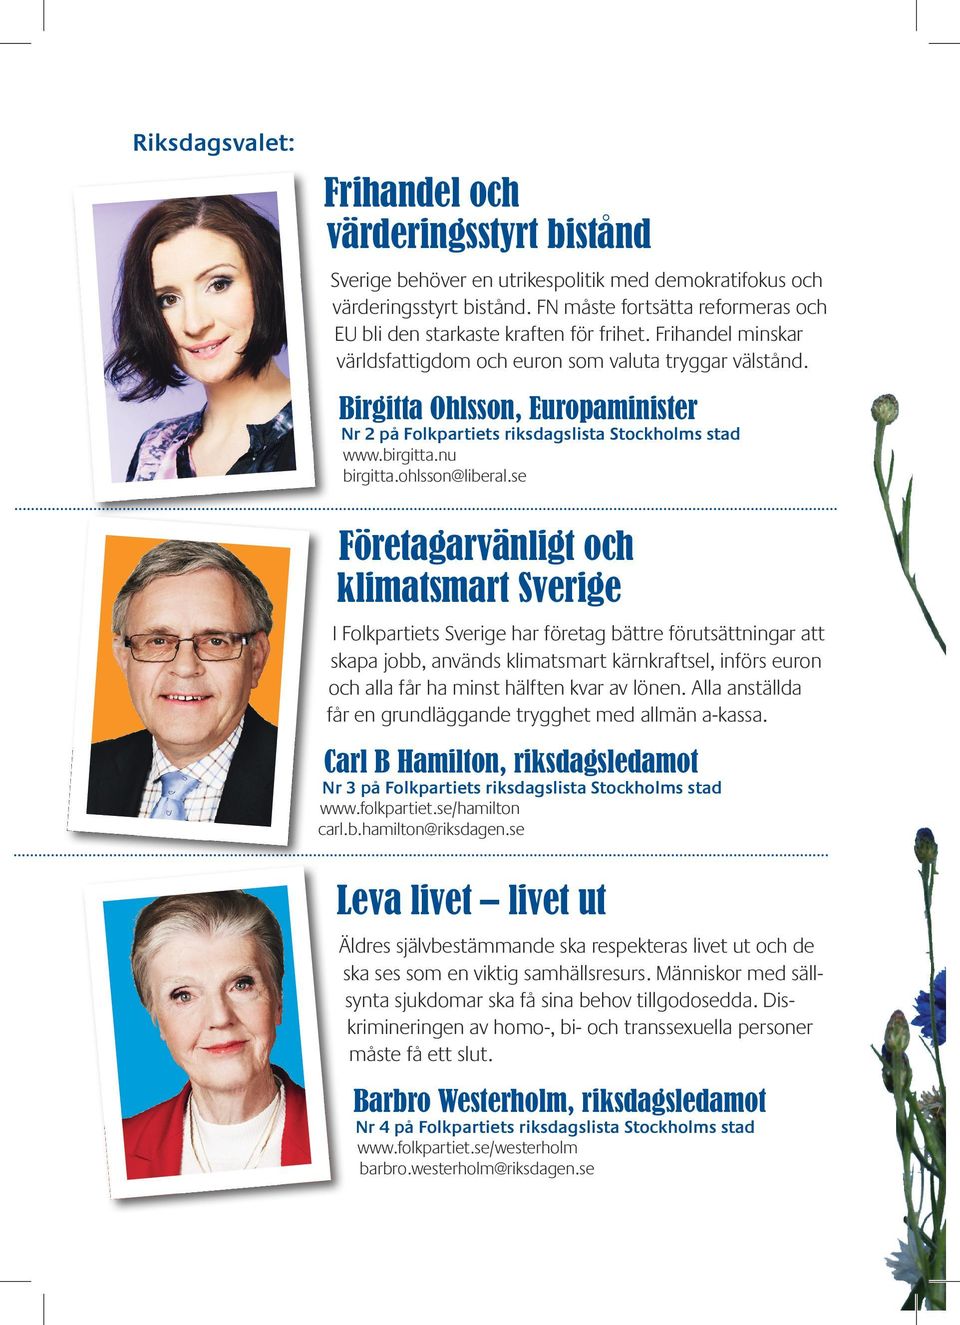 Birgitta Ohlsson, Europaminister Nr 2 på Folkpartiets riksdagslista Stockholms stad www.birgitta.nu birgitta.ohlsson@liberal.